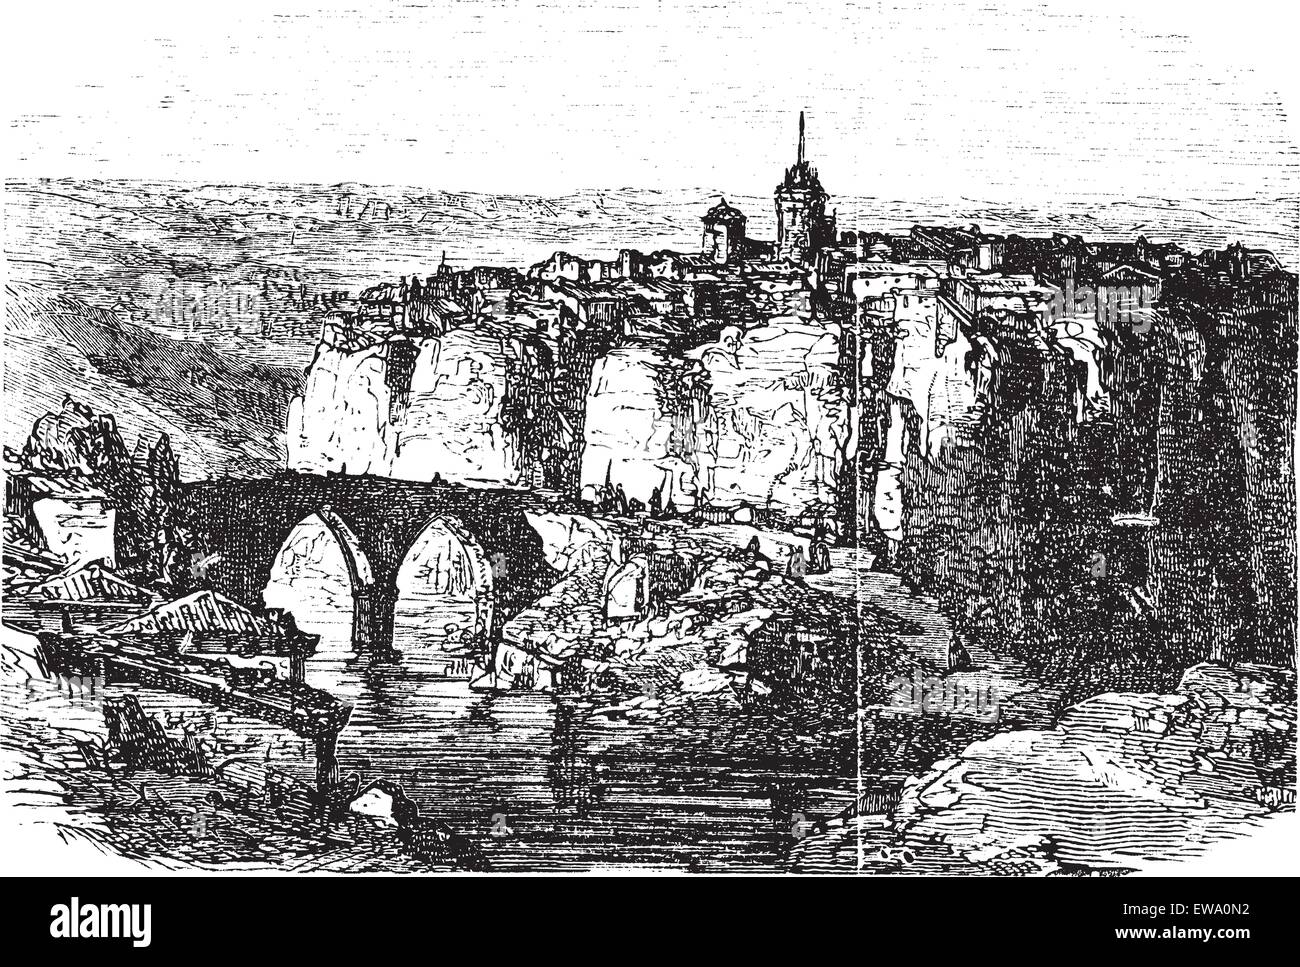 Cuenca en Espagne, pendant les années 1890, gravure d'époque. Vieille illustration gravée de Cuenca. Illustration de Vecteur